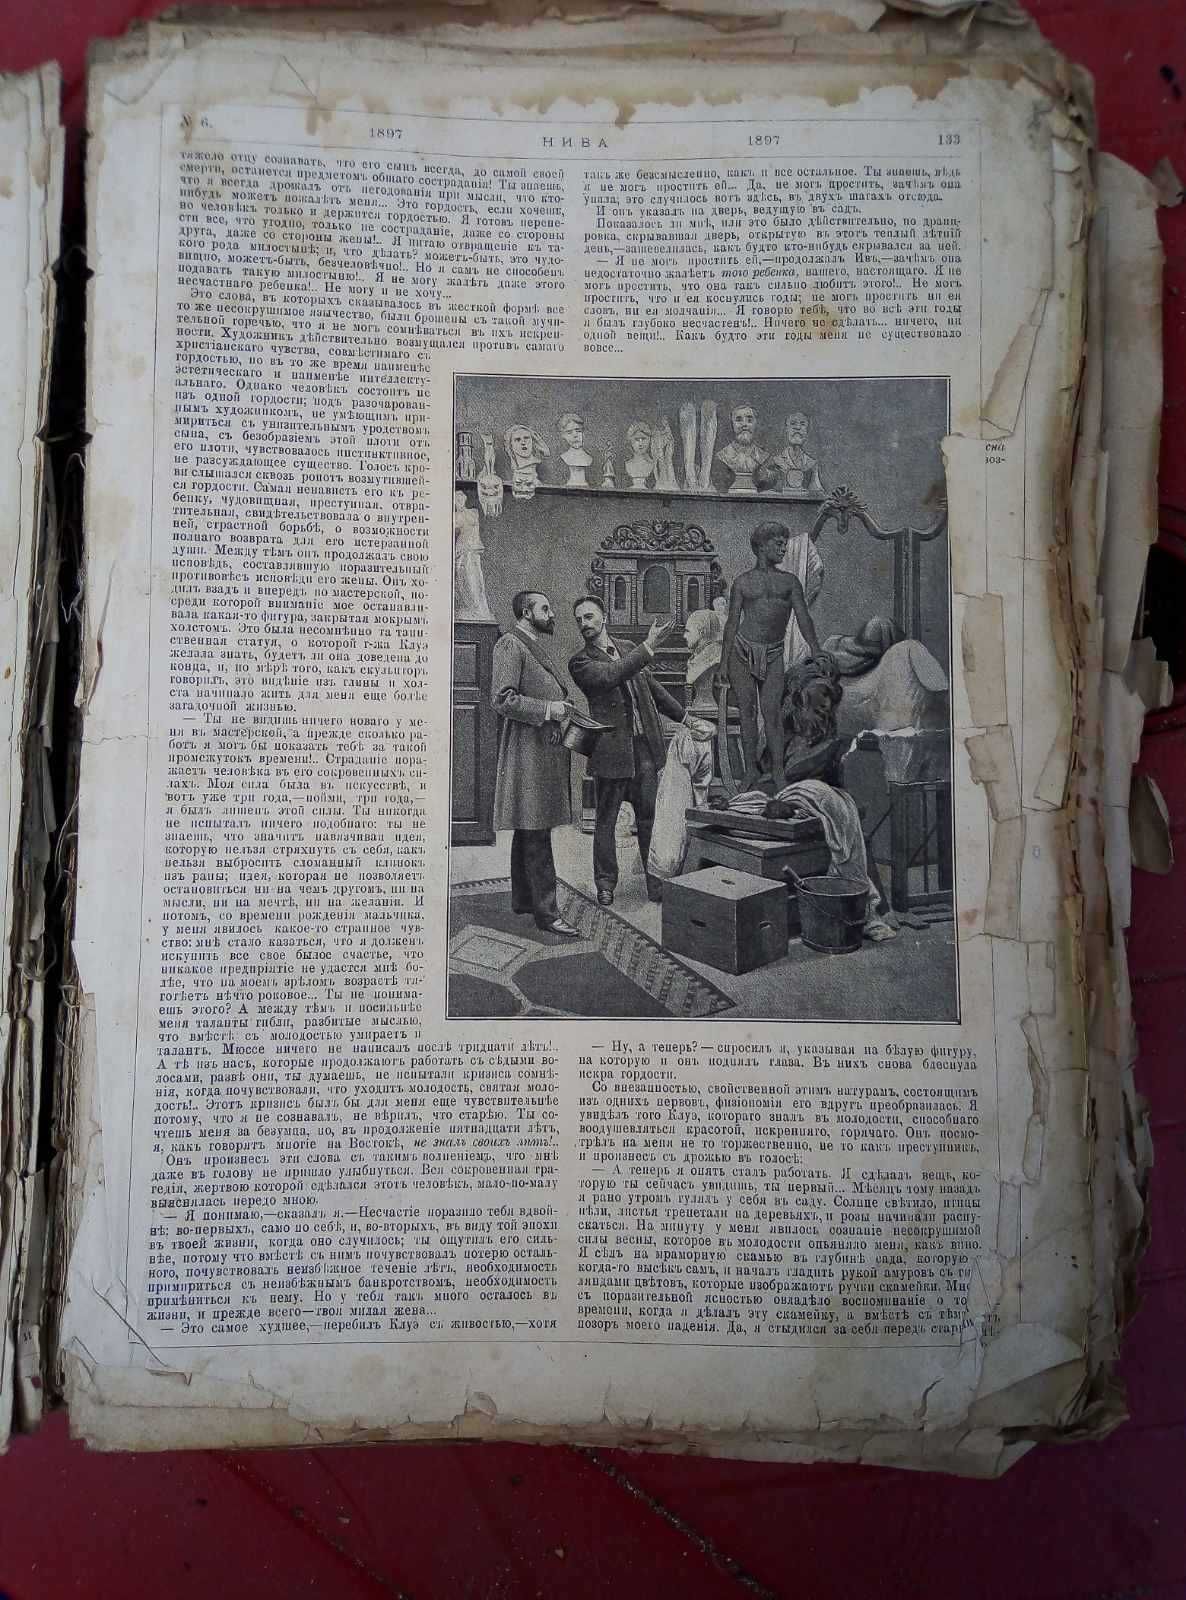 Журнал Нива за 1897 г. 51 номер